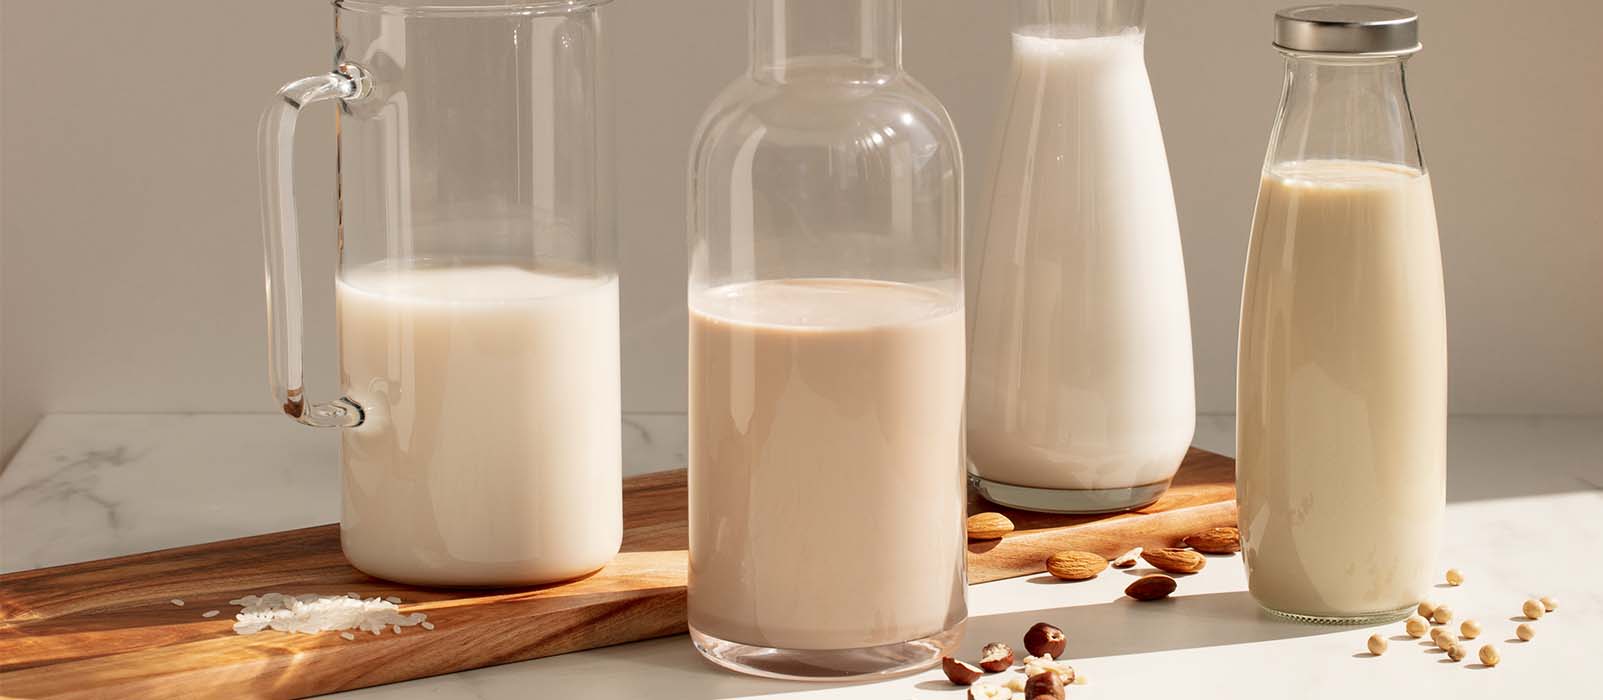 comment faire coeur en latte art lait